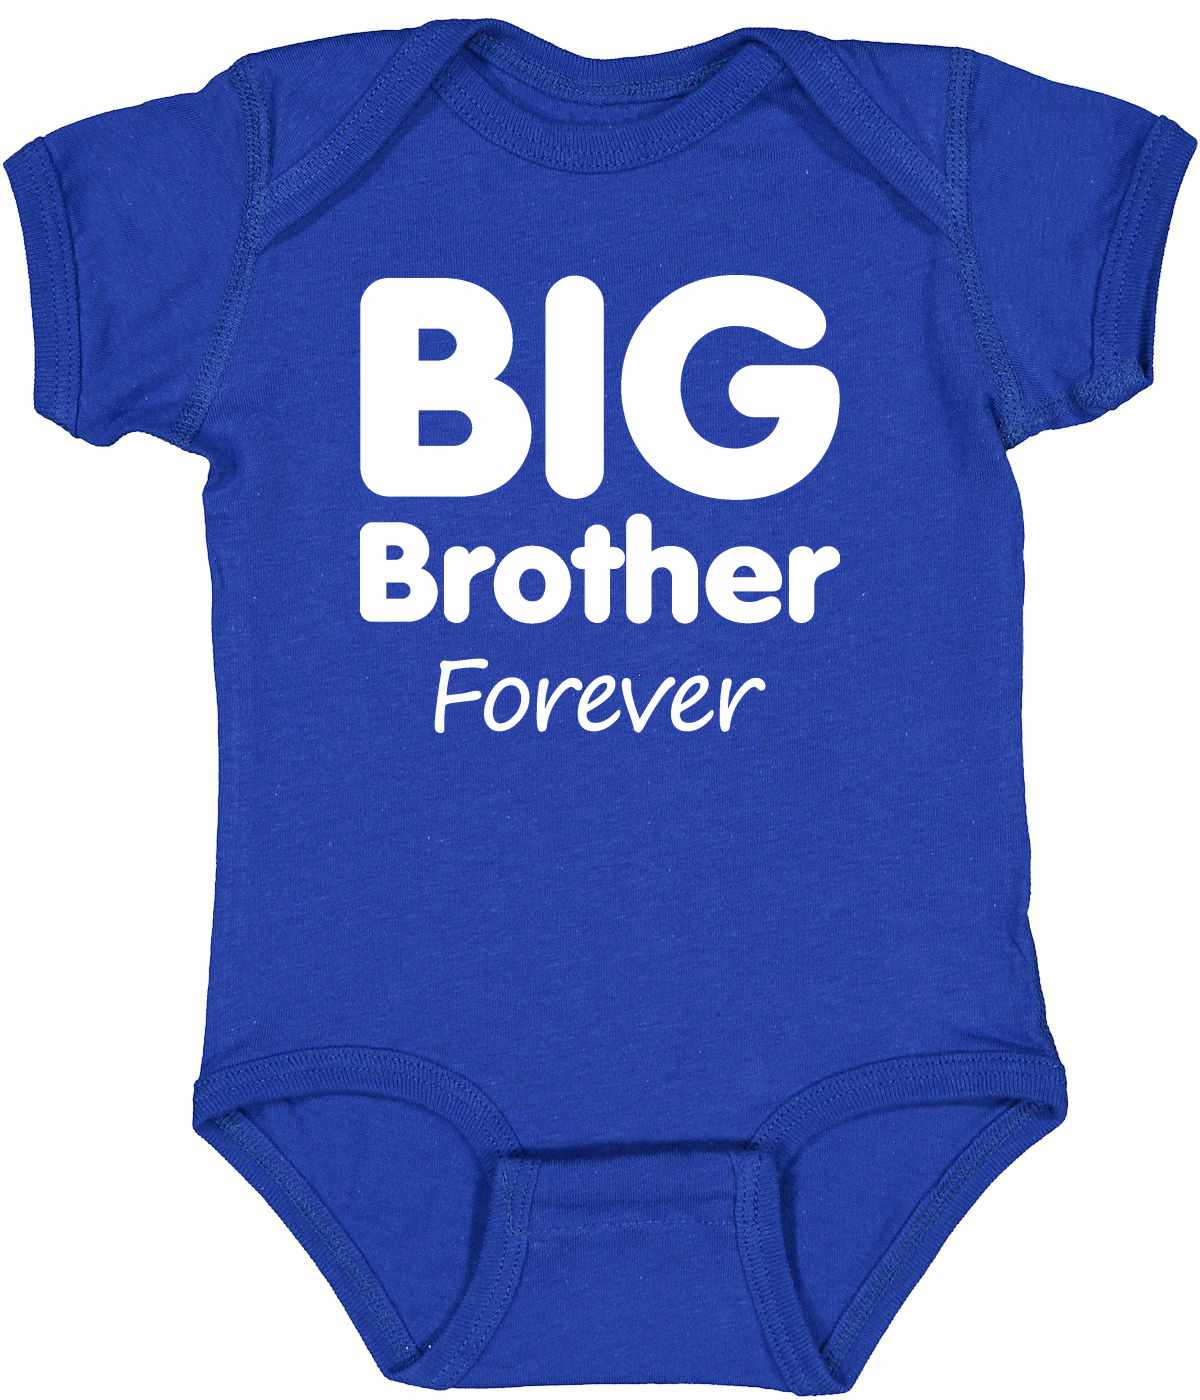 Big Brother Forever on Infant BodySuit (#952-10)